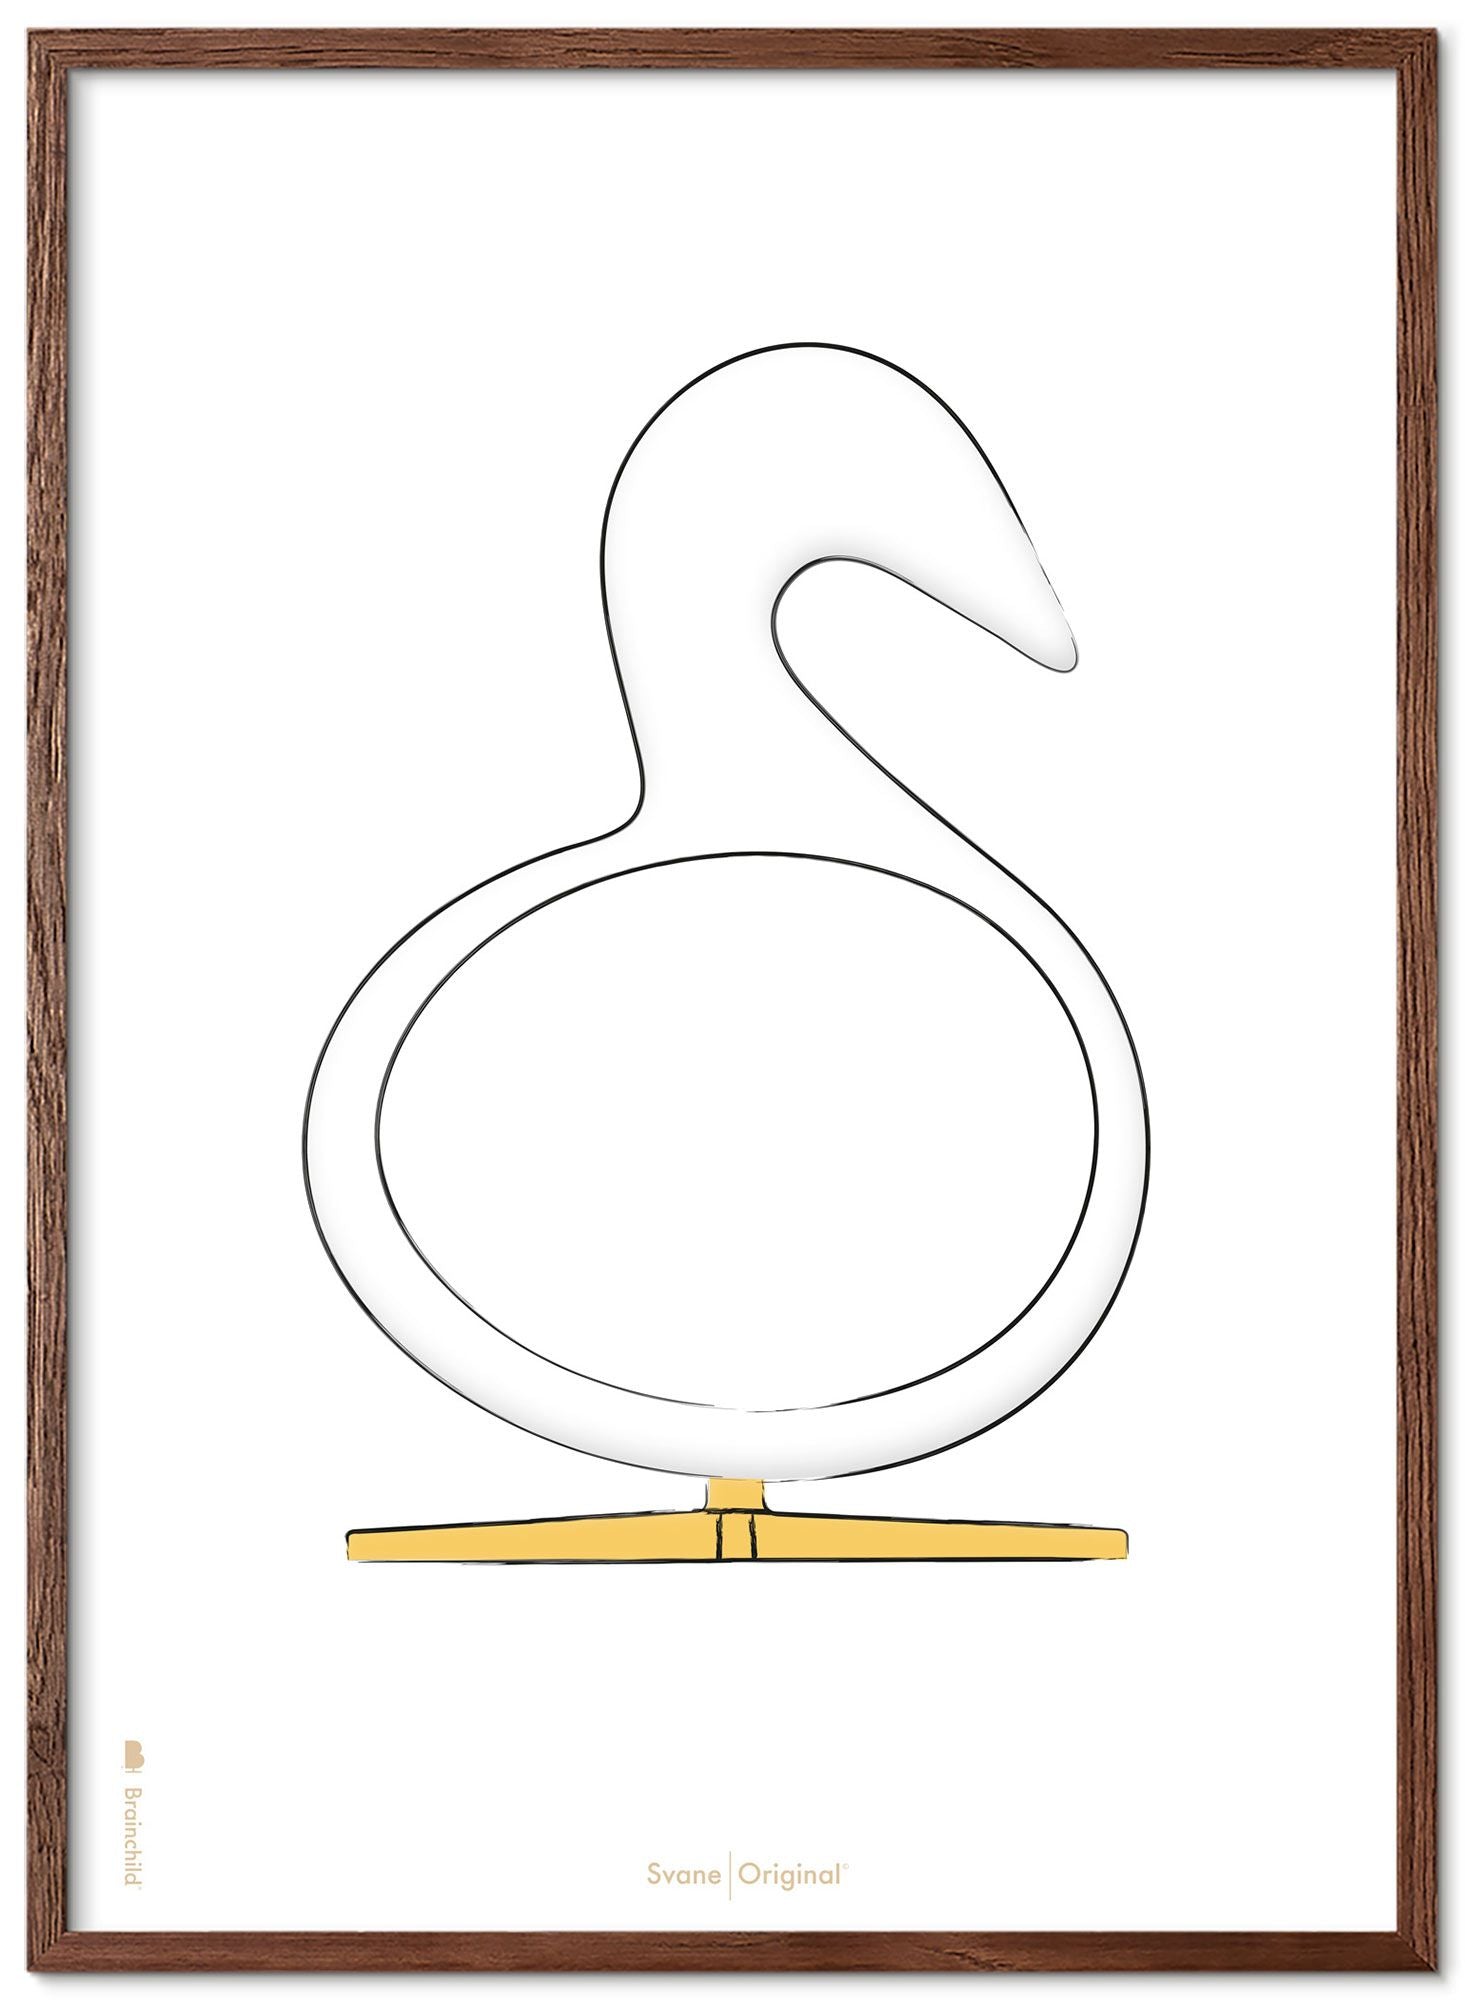 Brainchild Swan Design Sketch Poster Frame Made of Dark Wood A5, White Bakgrund